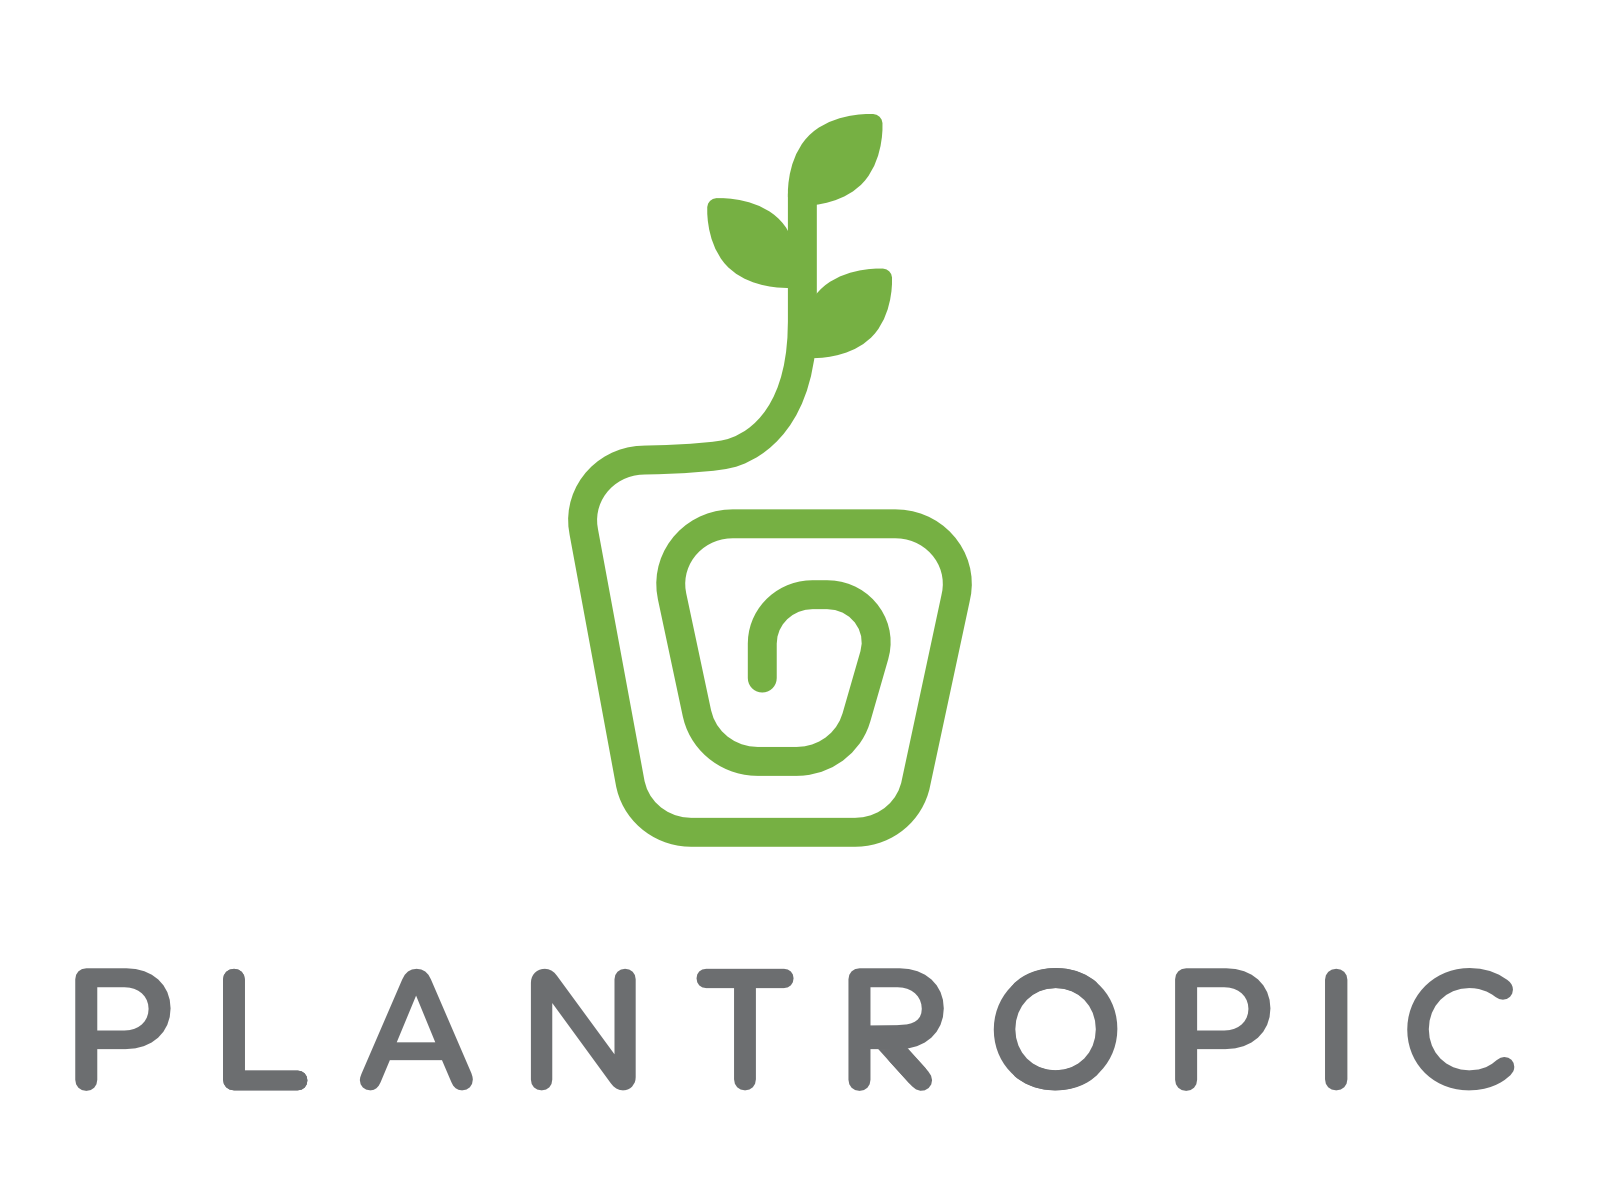 Plantropic